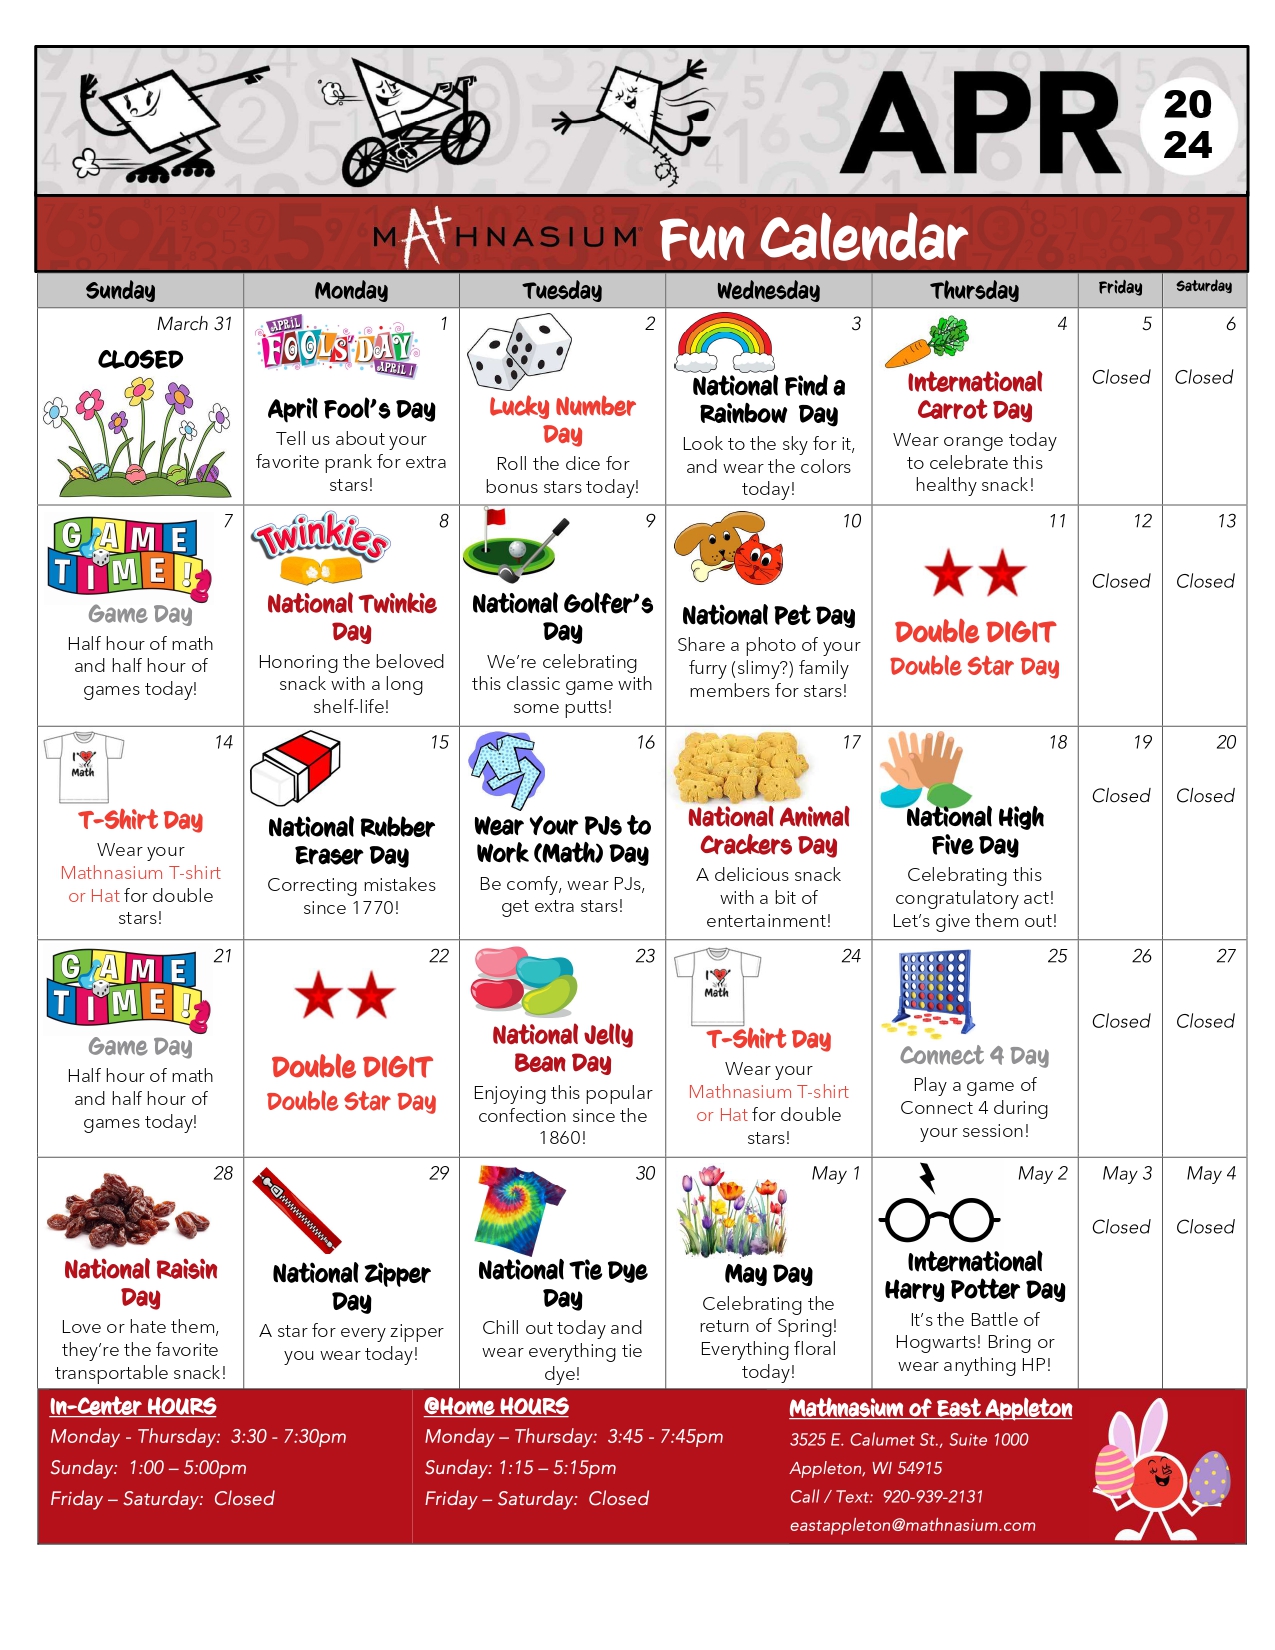 Monthly Fun Calendar - APRIL